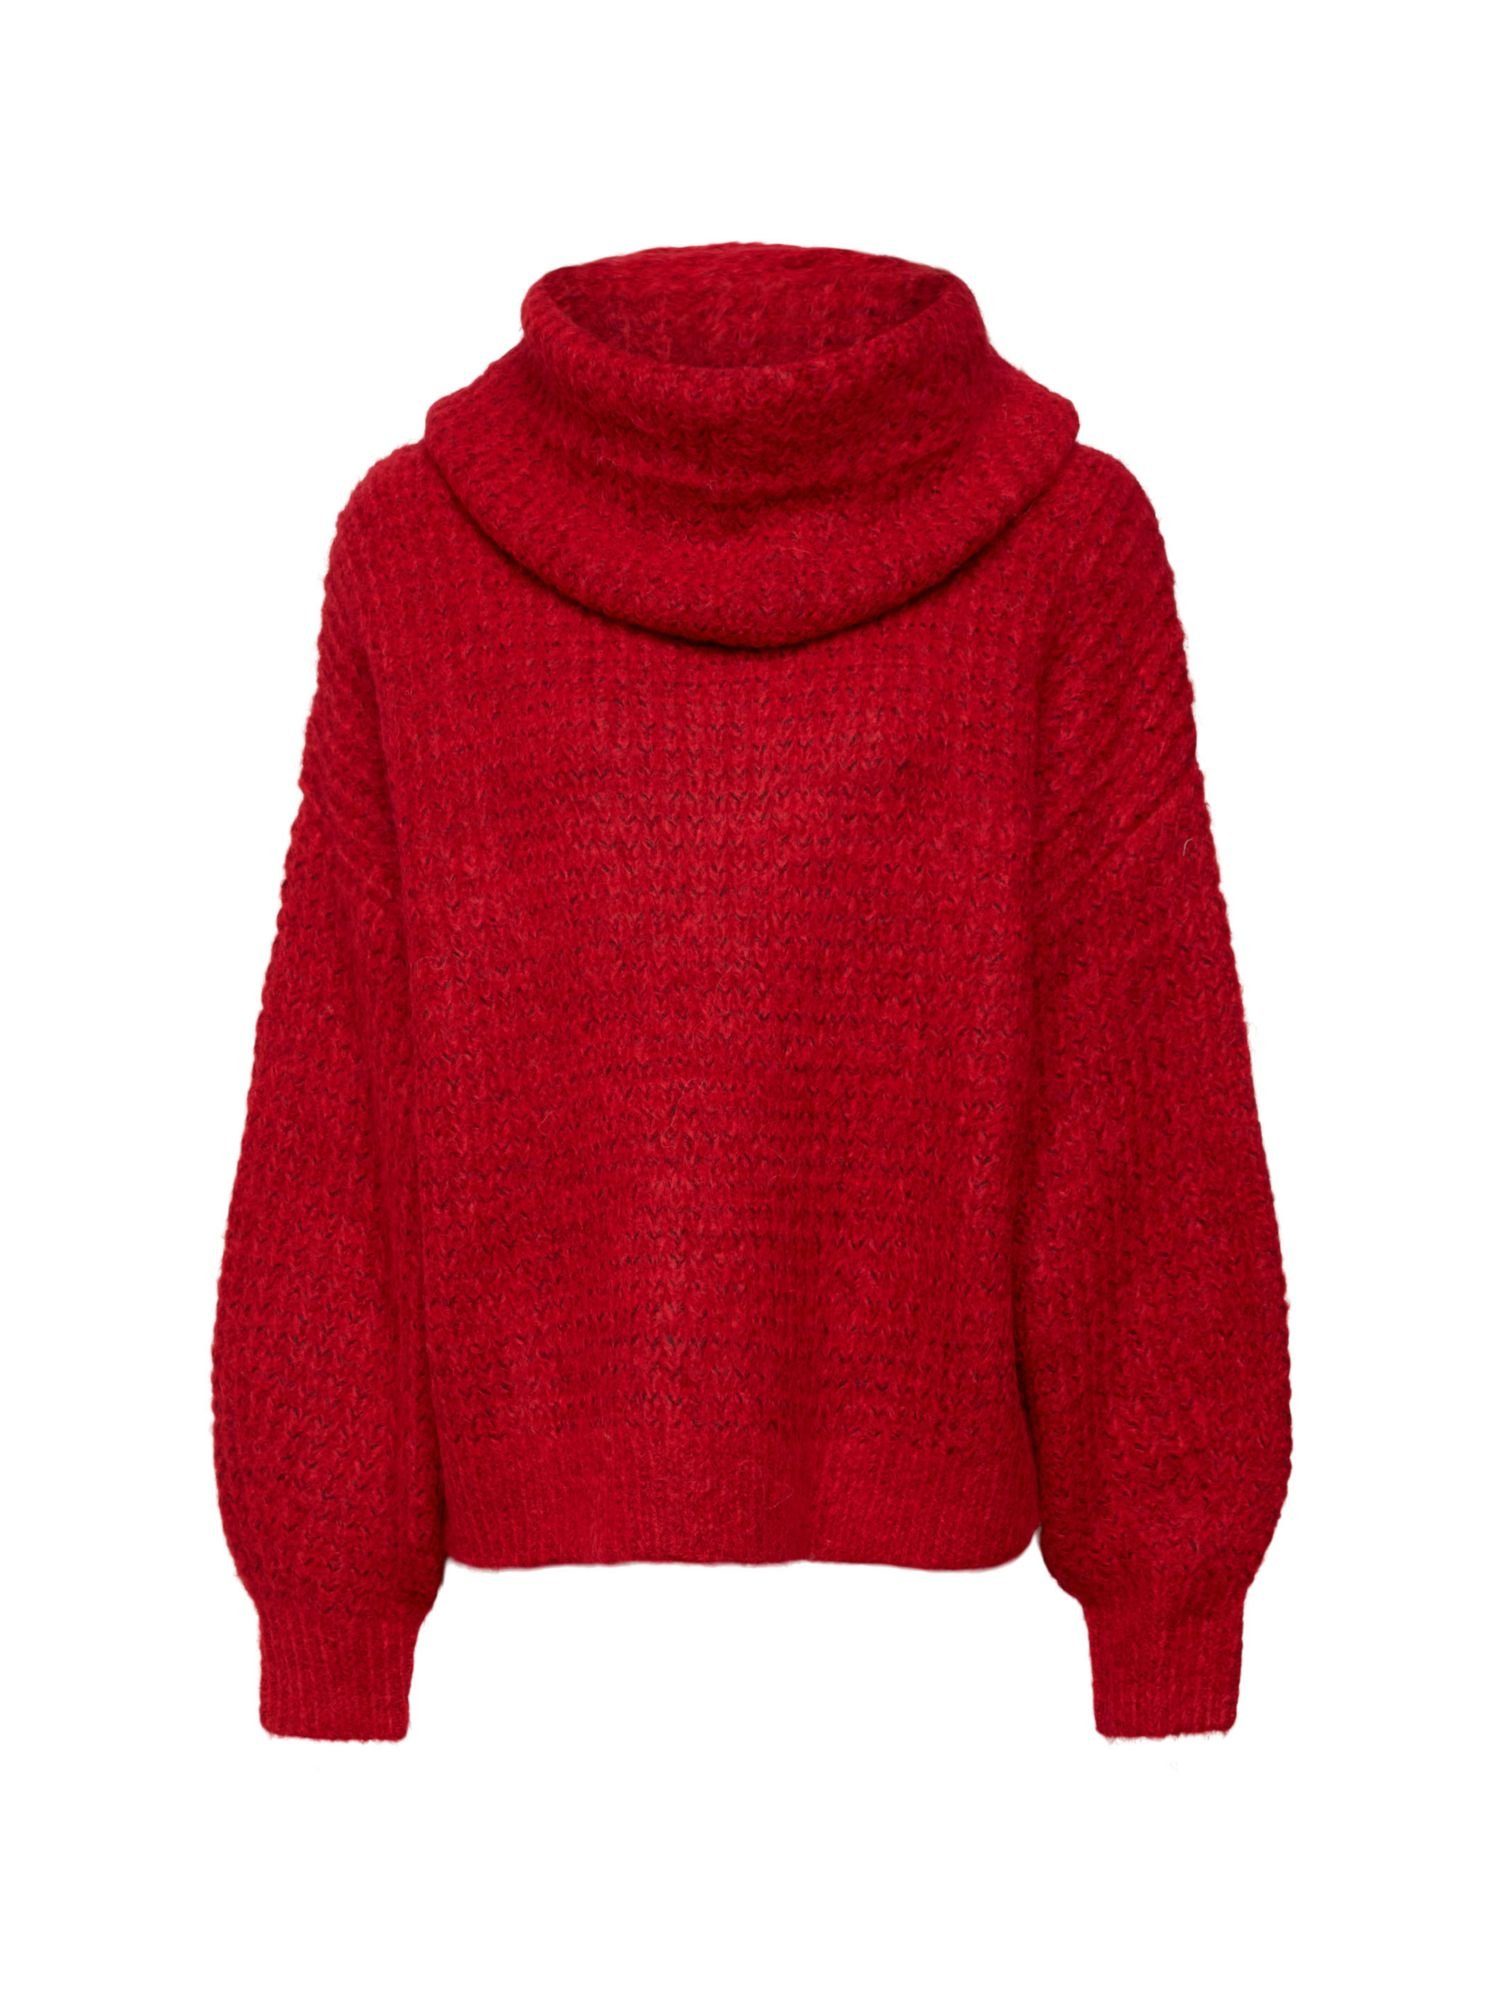 Esprit Damen Pullover online kaufen | OTTO